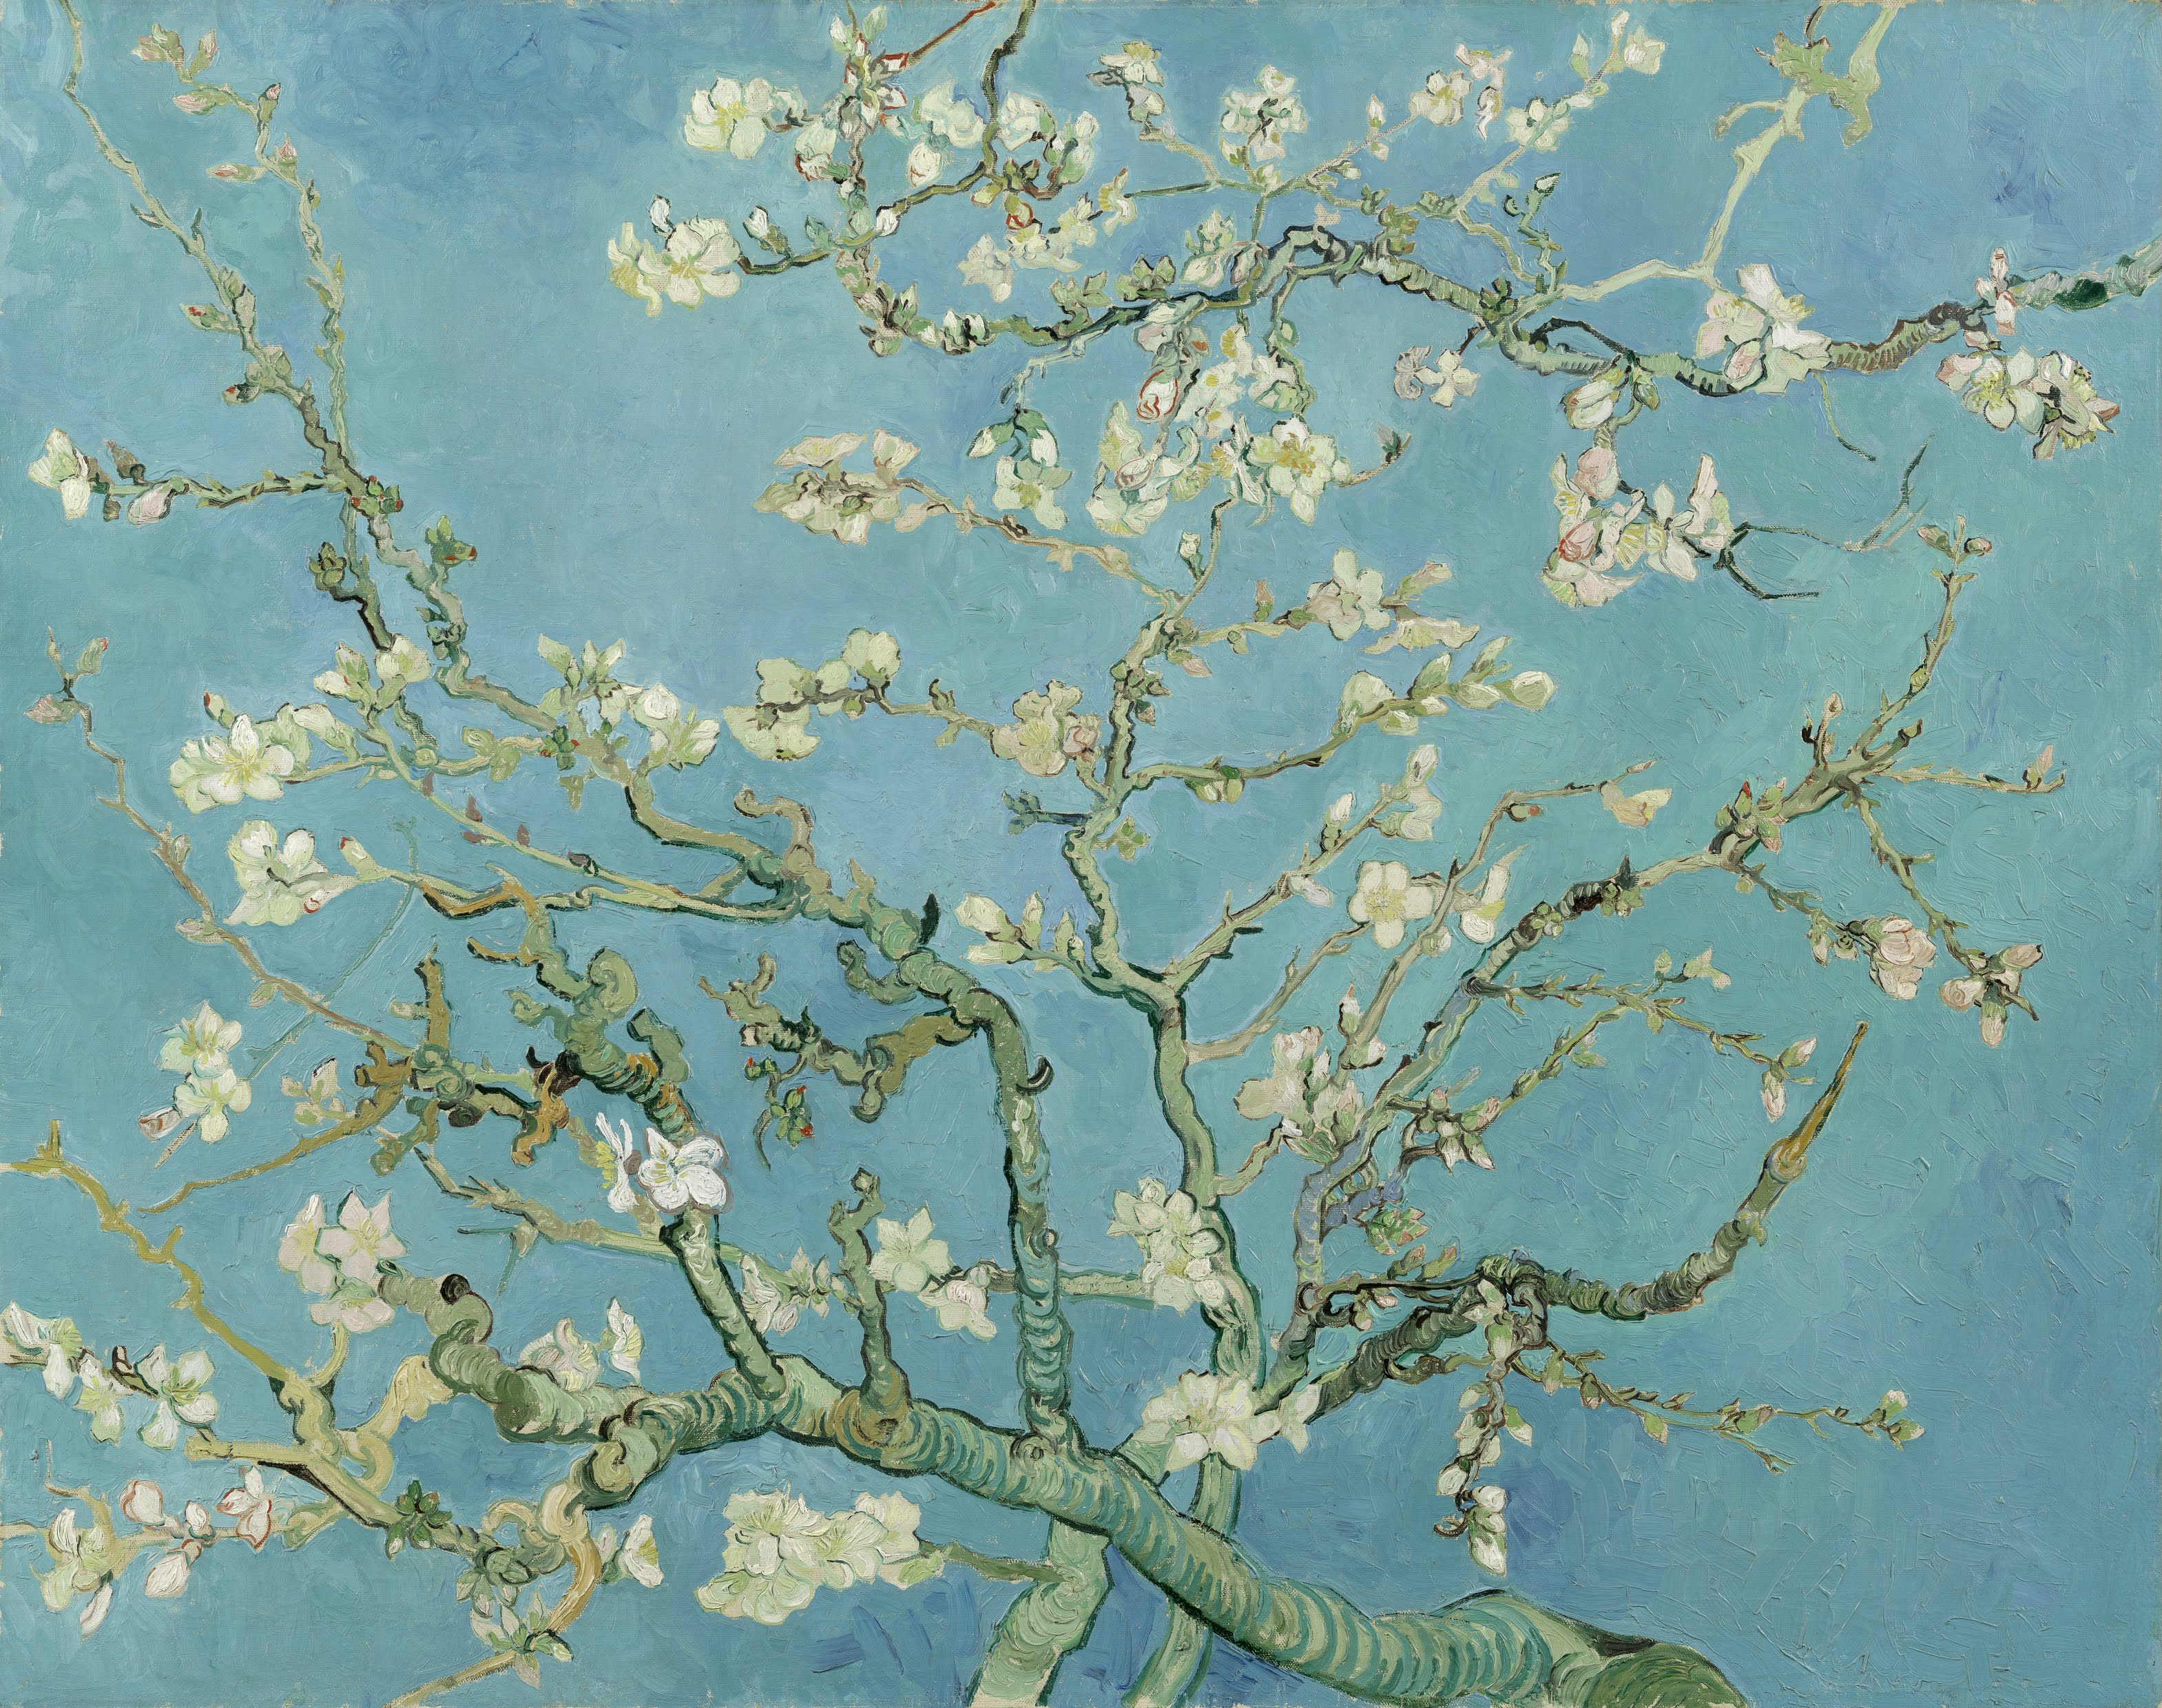 Almond Blossoms by Vincent van Gogh - 1890 - 74 x 92 cm Van Gogh Museum